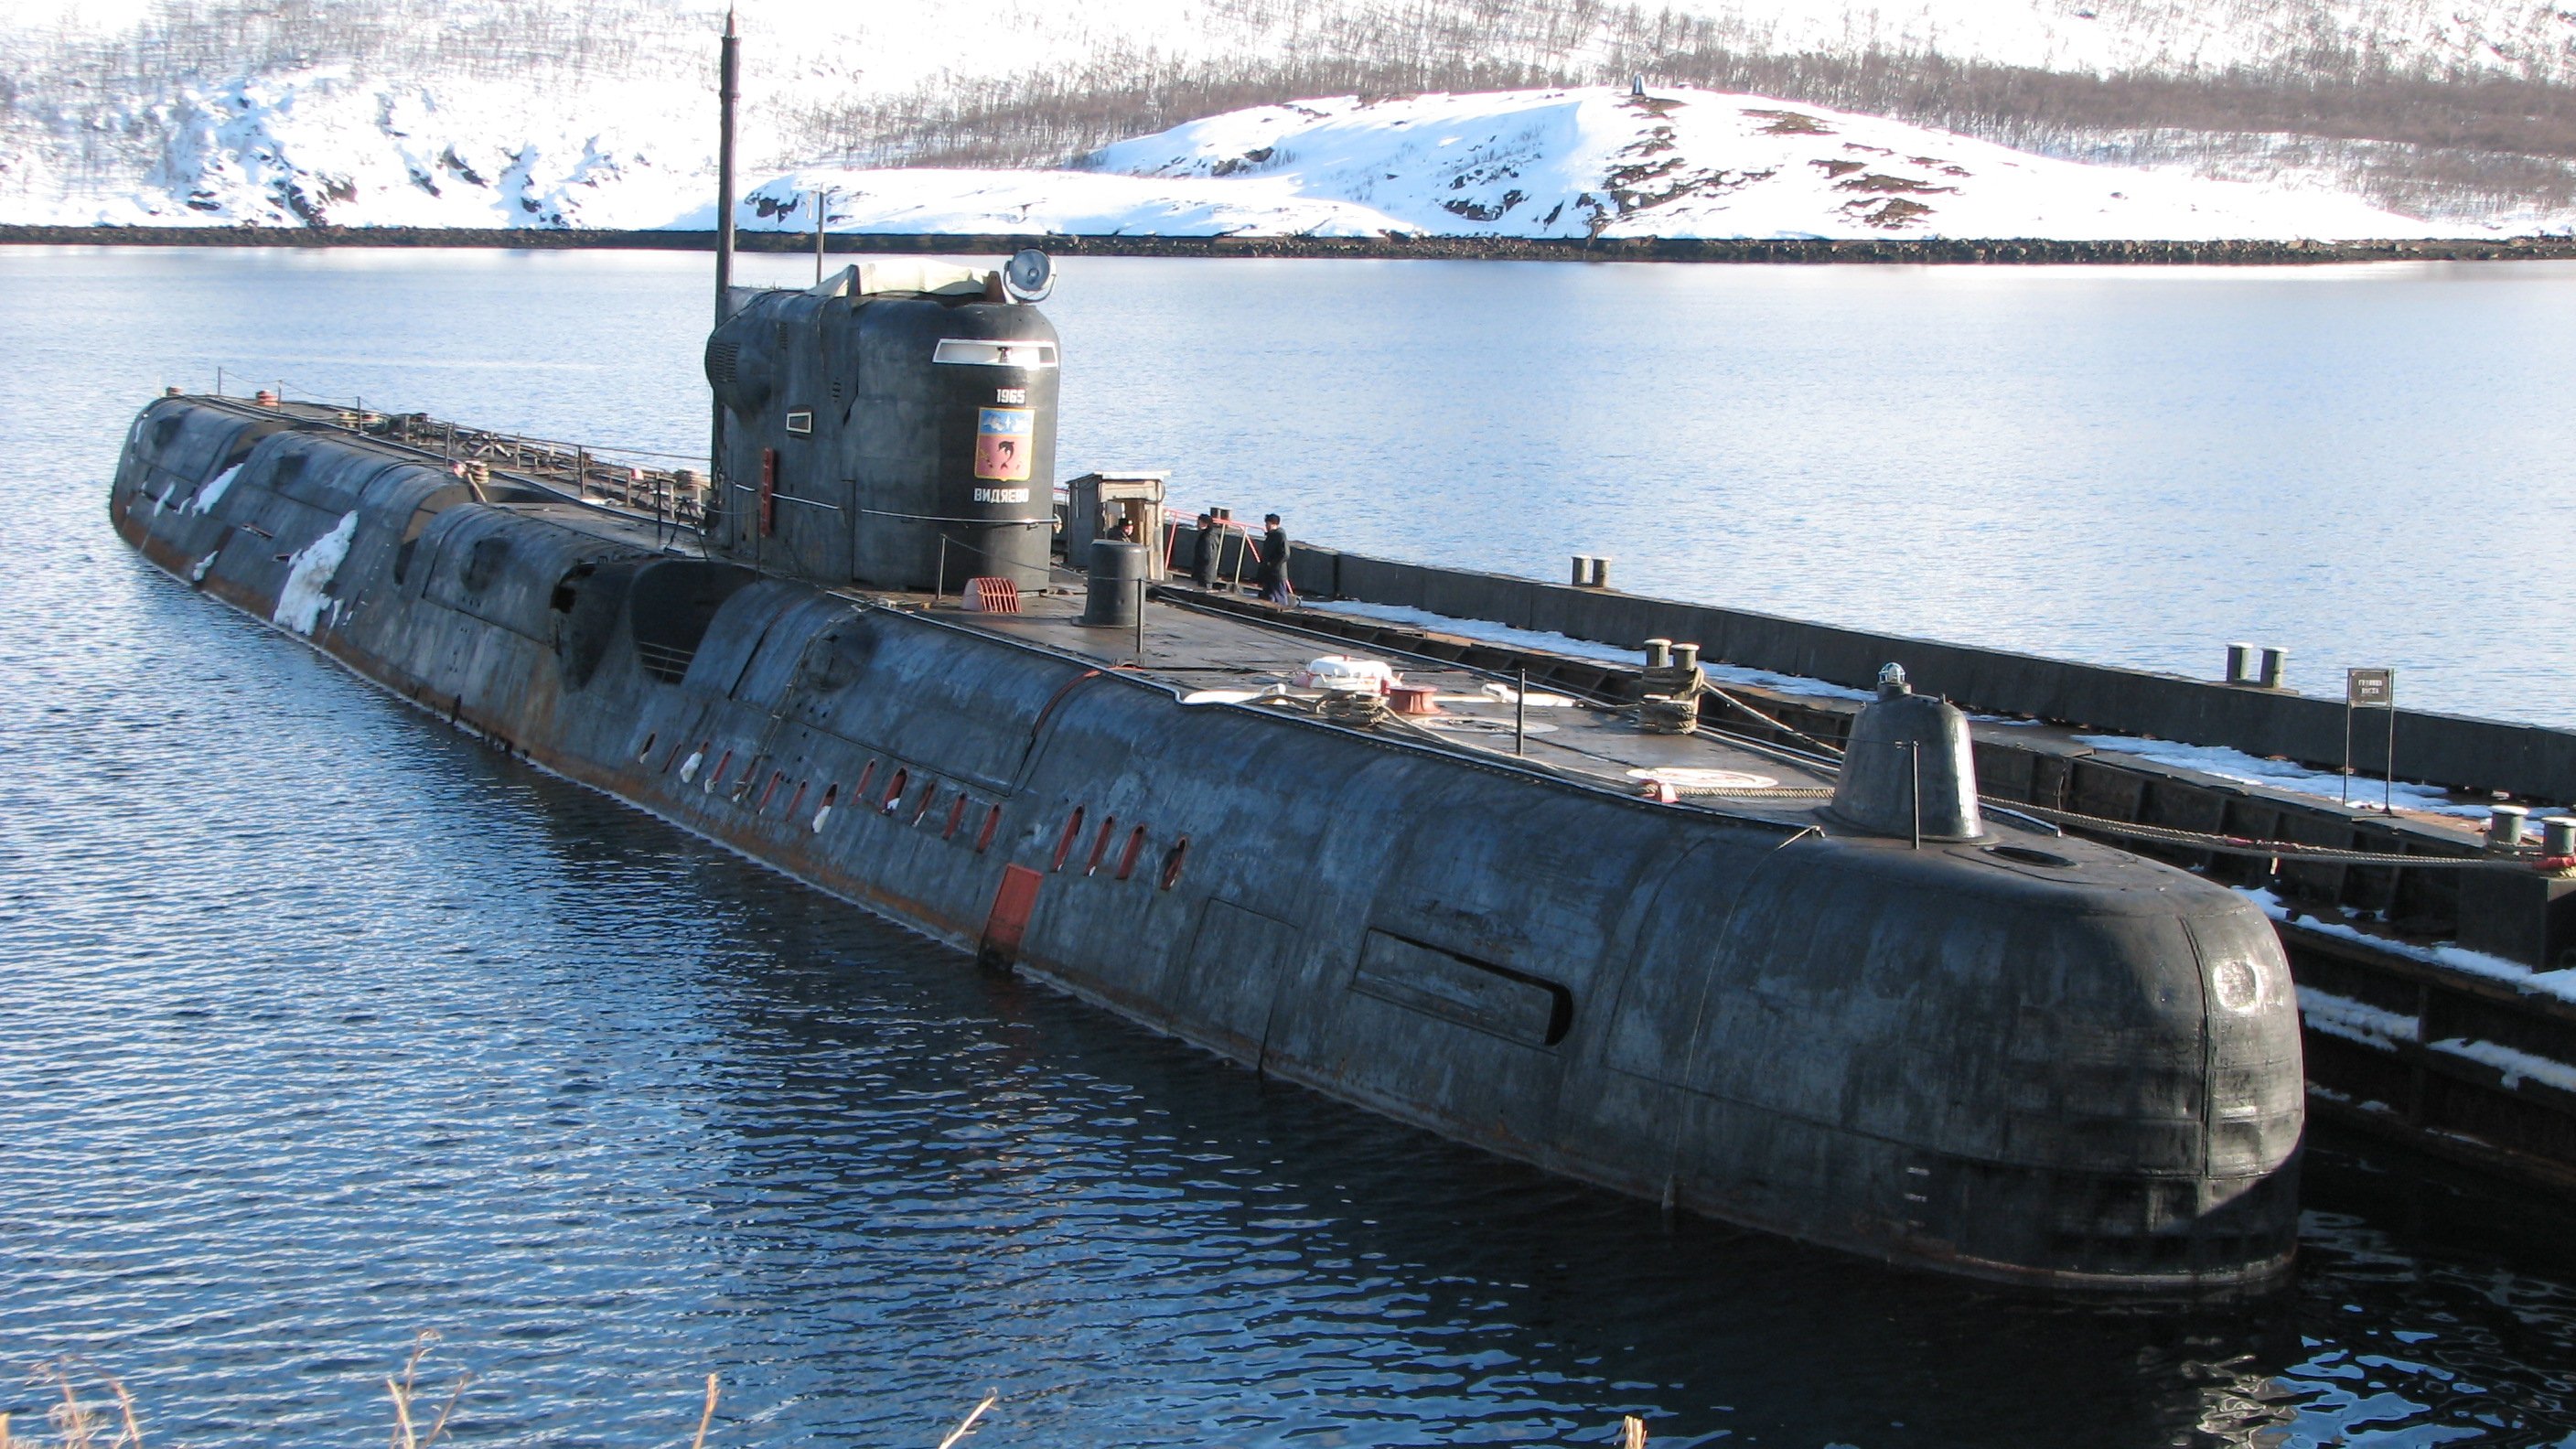 Пл ка. Подводные лодки проекта 667бдрм «Дельфин». ПЛАРК 675. АПЛ проекта 675. Проект 675 подводная лодка.